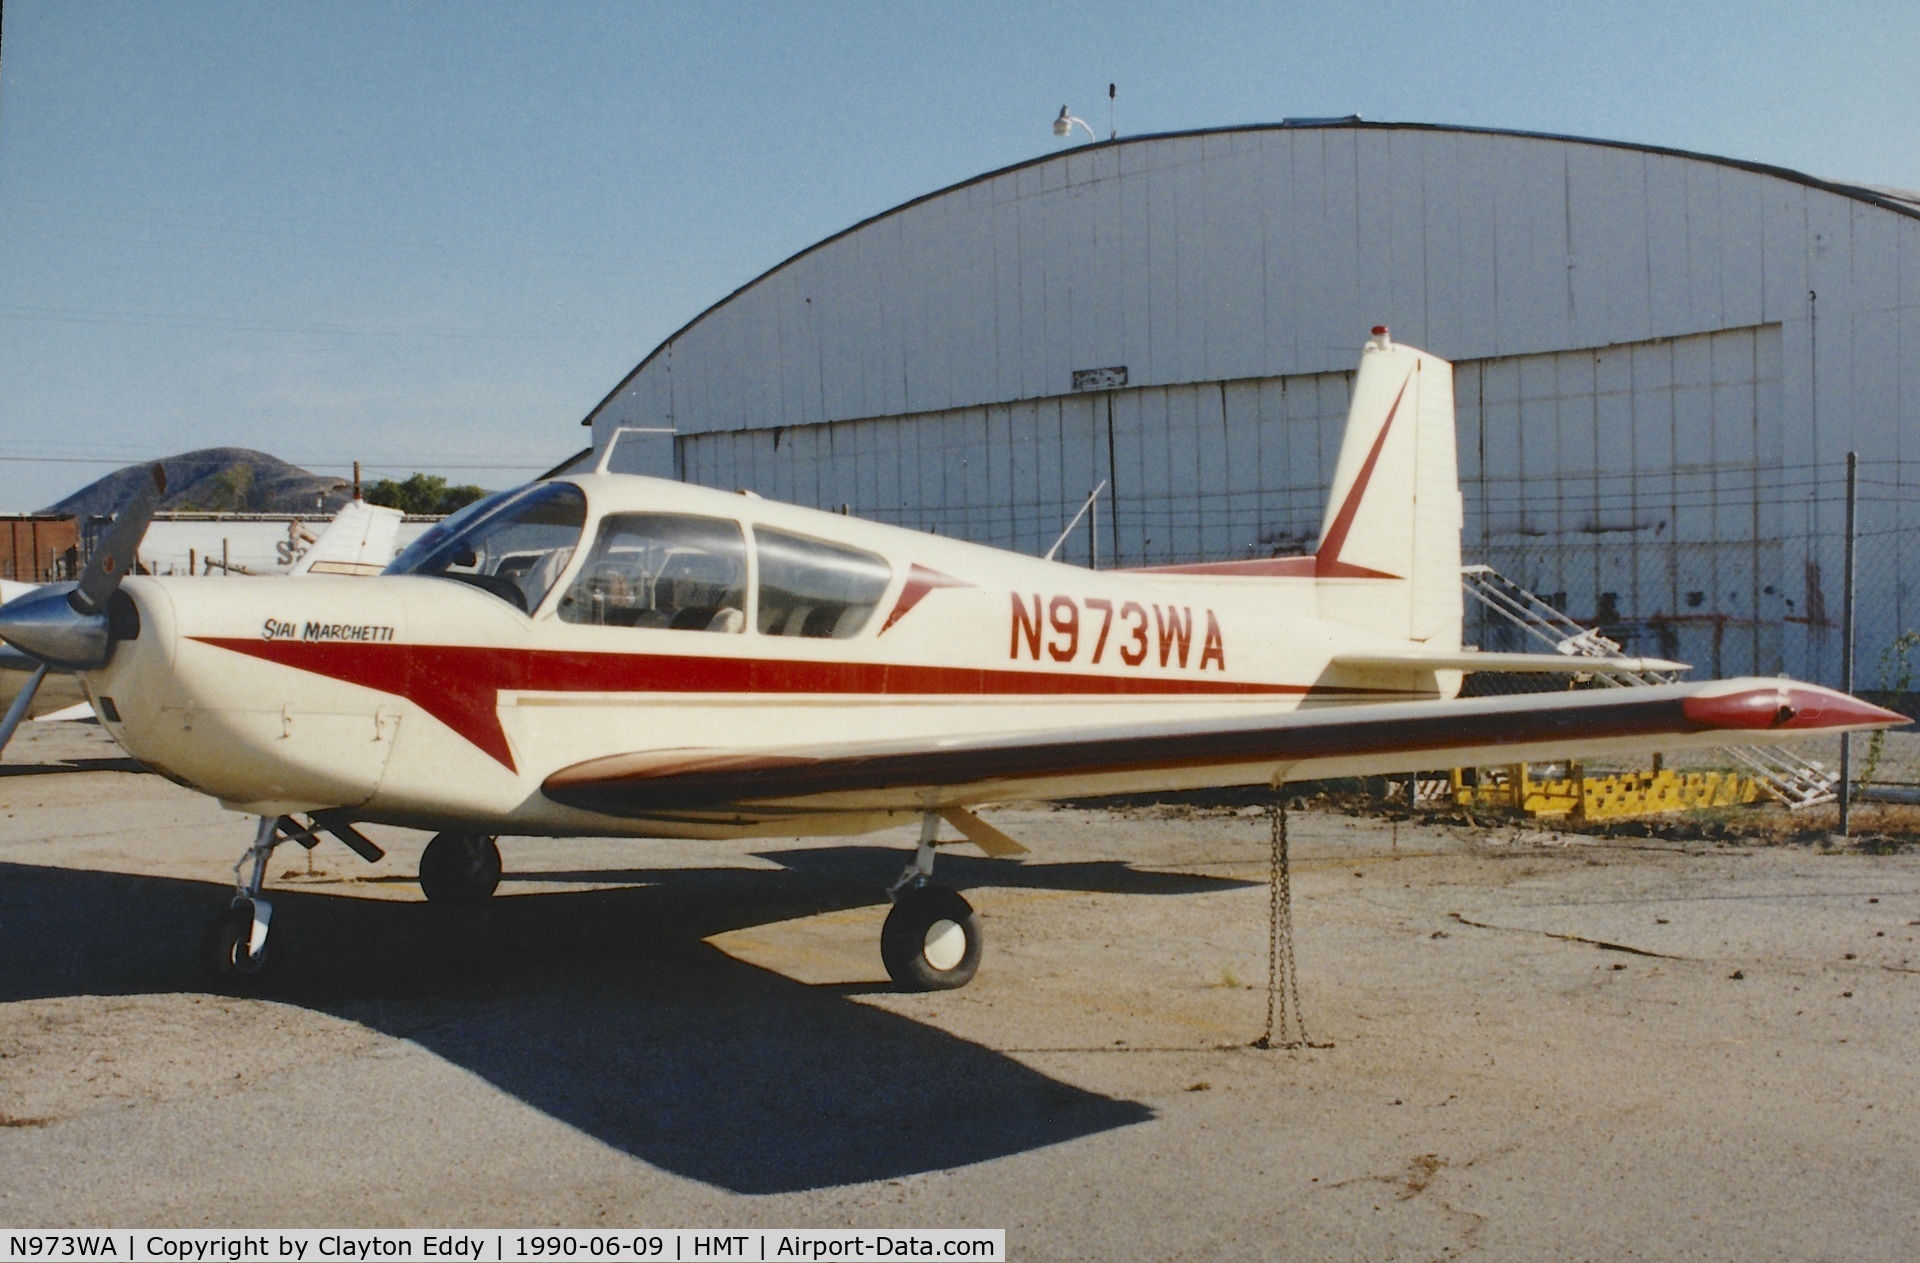 N973WA, 1967 SIAI-Marchetti S-205-22R C/N 382, N973WA in Hemet-Ryan Airport California. 1990.